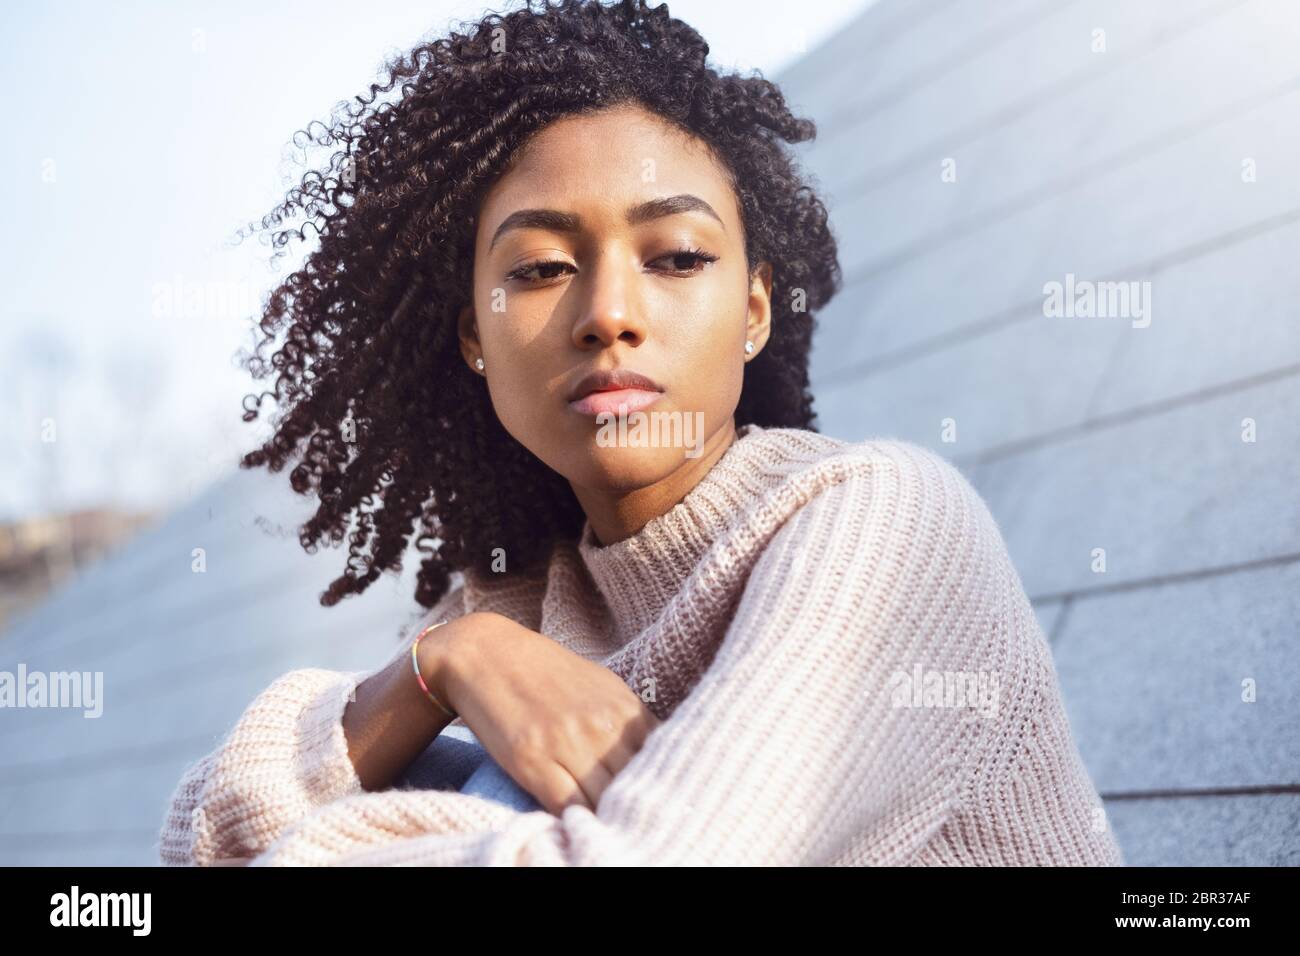 Retrato de una niña negra que sufre soledad y depresión Foto de stock